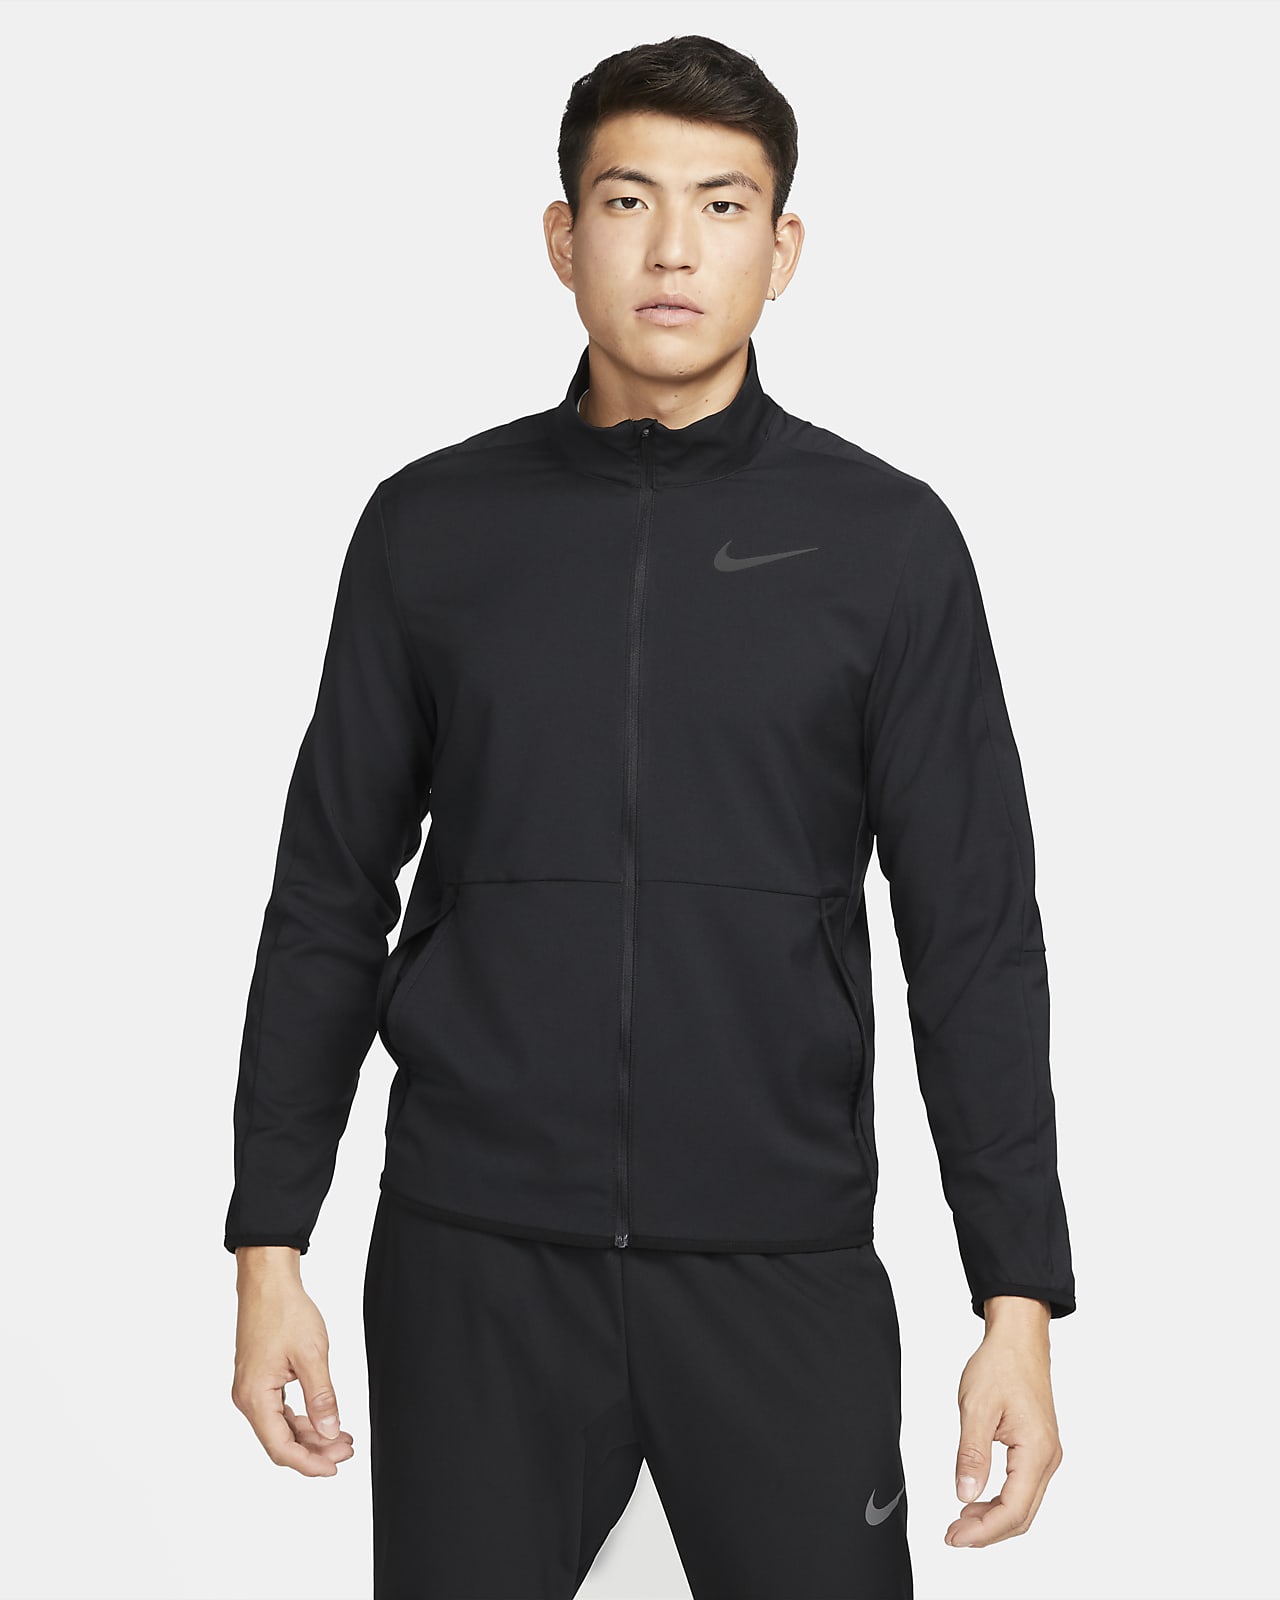 เสื้อแจ็คเก็ตเทรนนิ่งผู้ชายแบบทอ Nike Dri-FIT